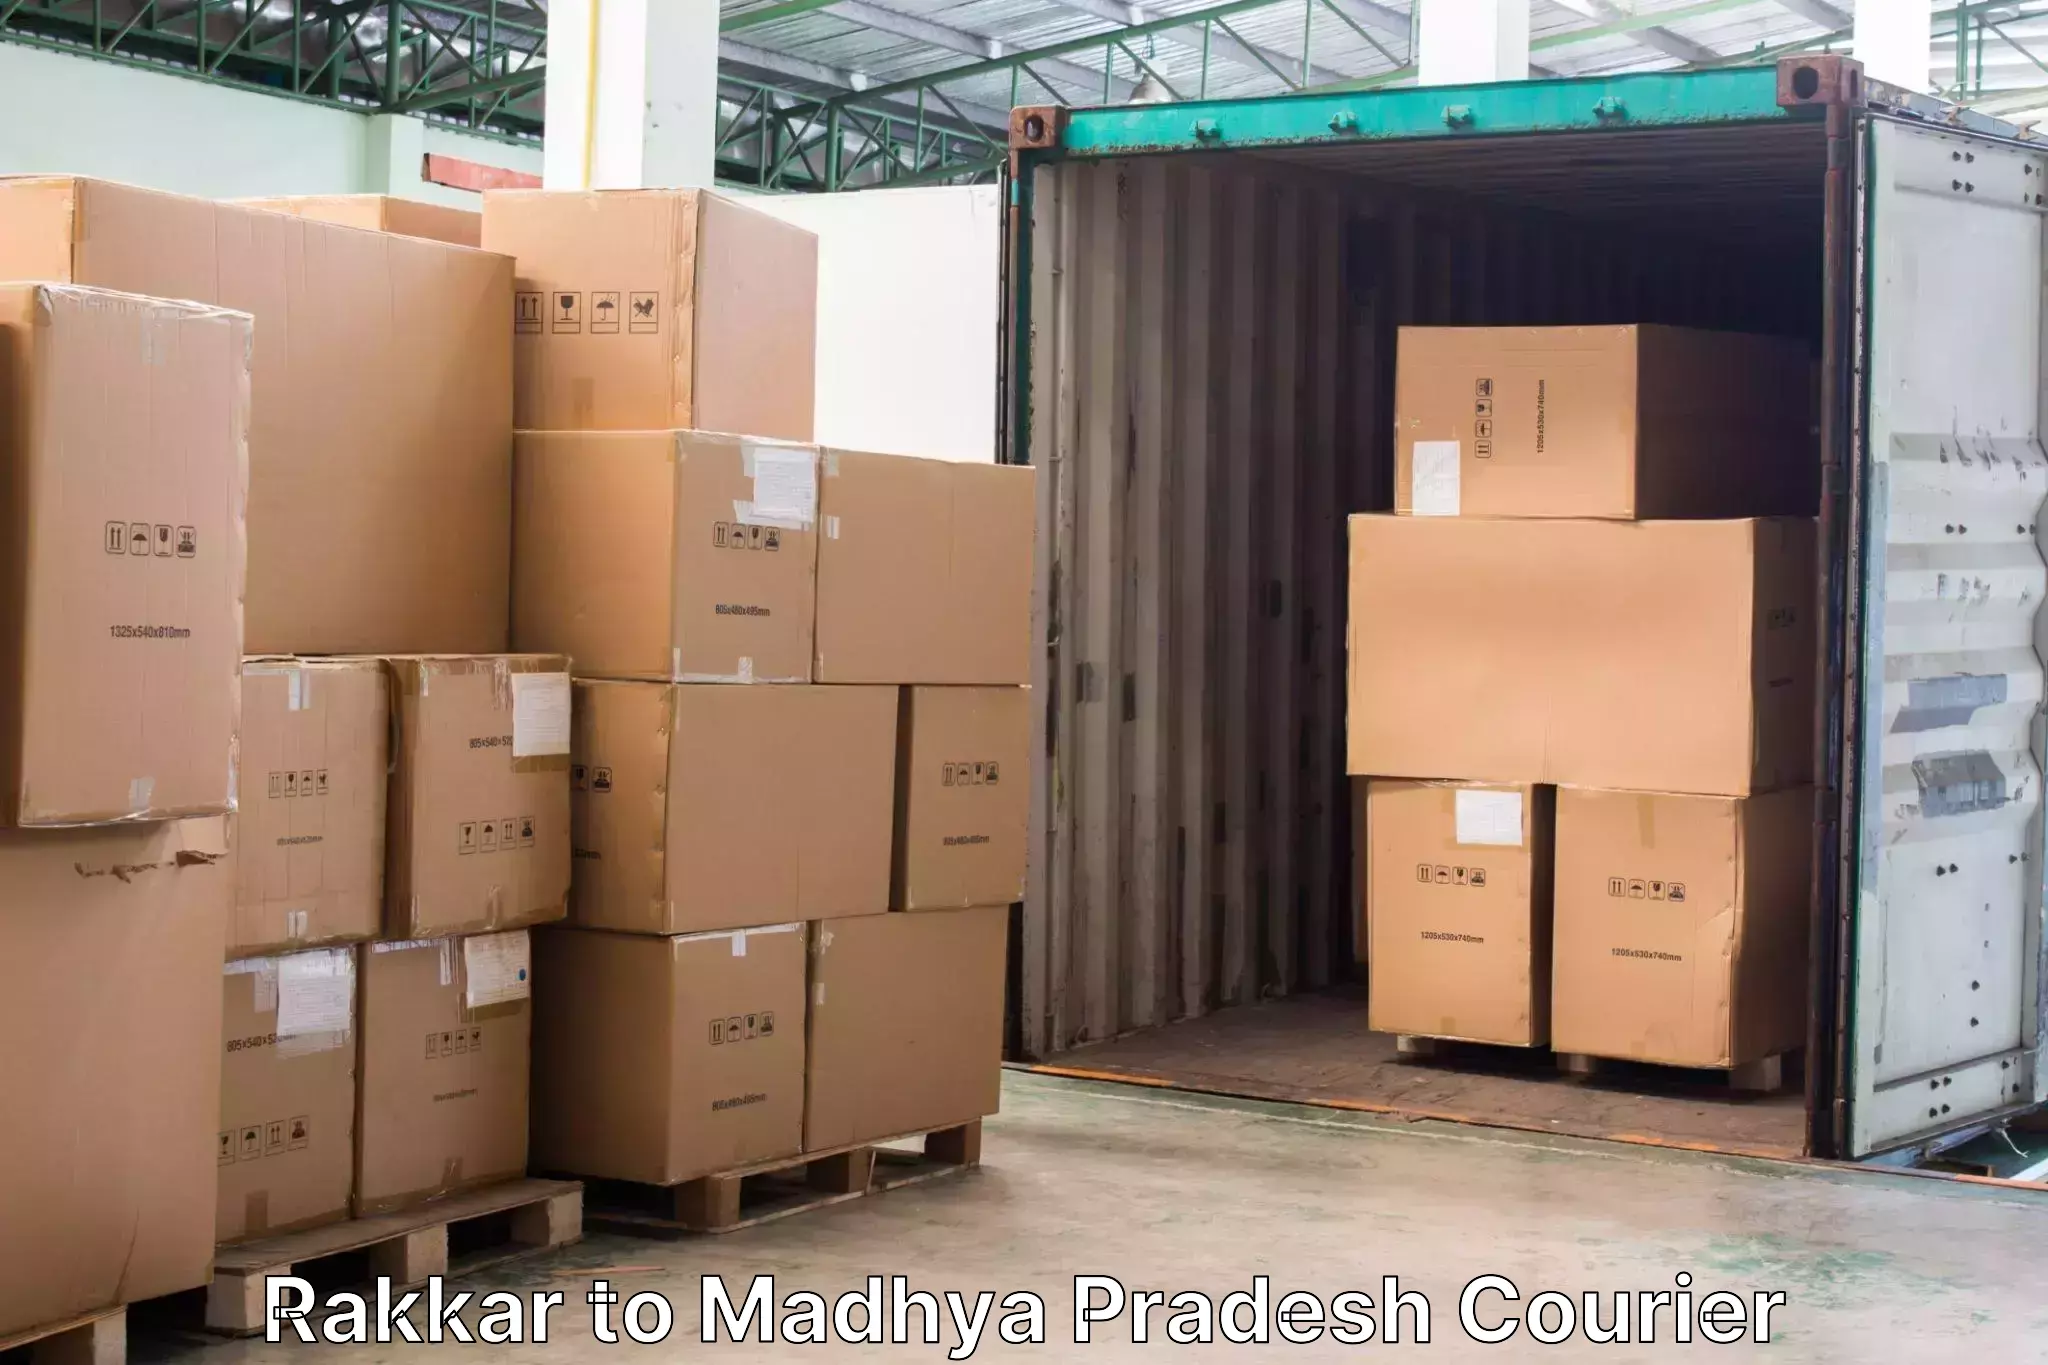 Door-to-door baggage service Rakkar to Madhya Pradesh